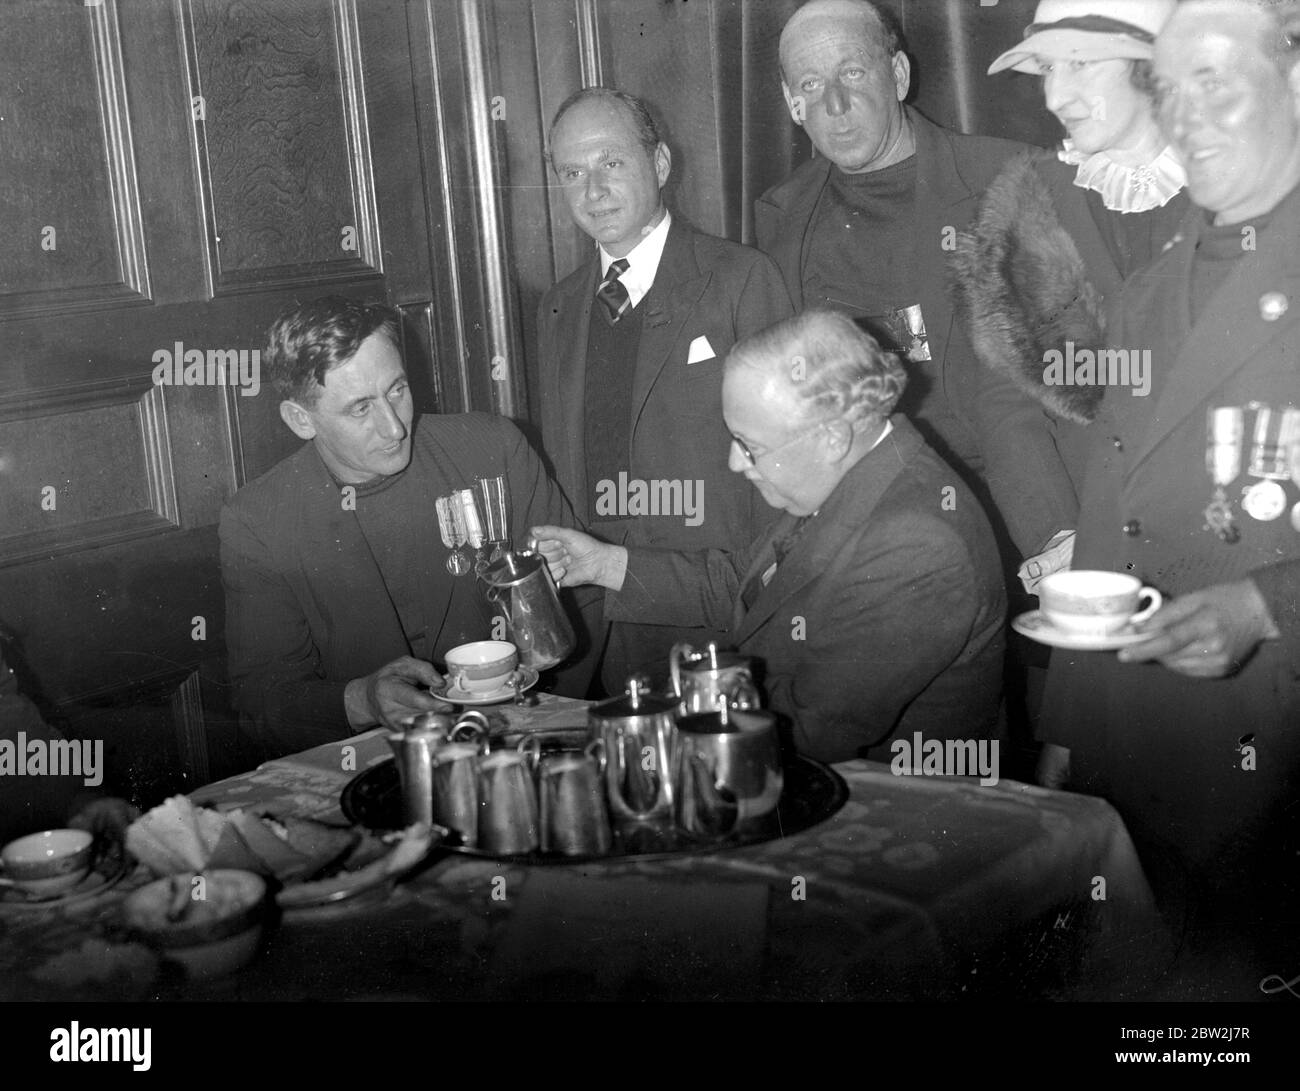 Kapitän Cecil Richards von Hosebud und Sir Kingsley Wood (Gesundheitsminister) nehmen Tee, nachdem sie die Petition von neun newlyn-Fischern vorgelegt haben, die gegen den Abbruch ihrer Häuser protestieren und im Rahmen eines Slum-Clearing-Programms verurteilt wurden. 22. Oktober 1937 Stockfoto